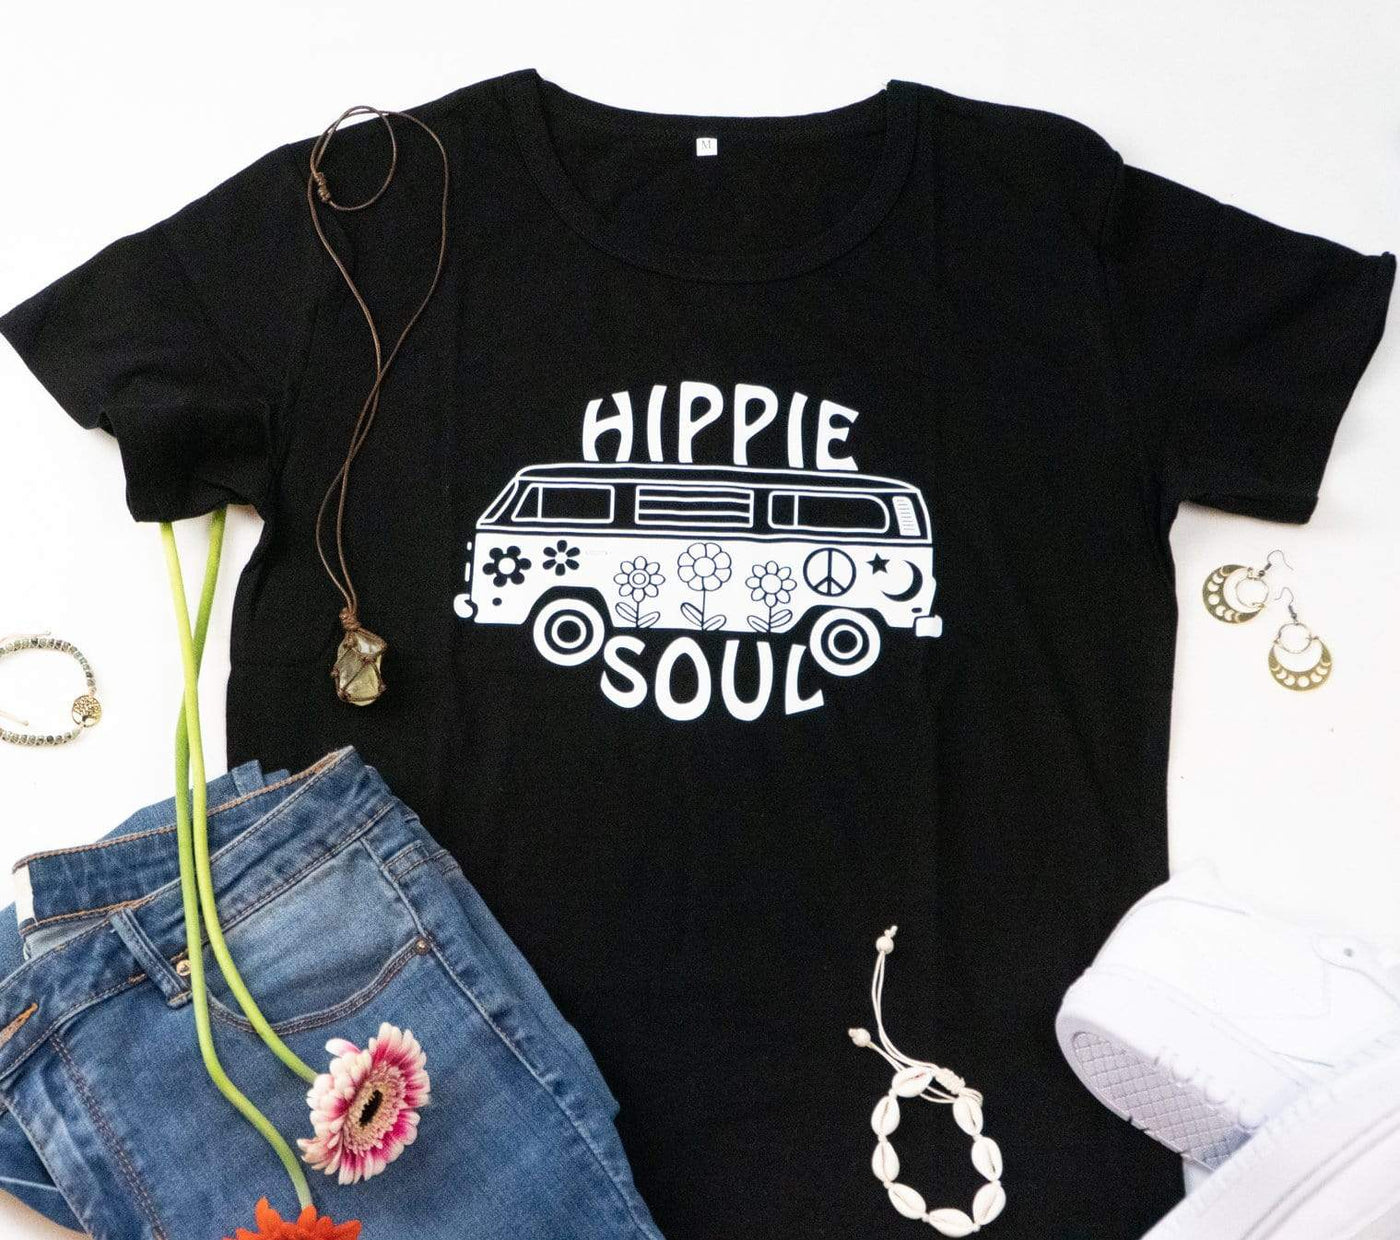 Hippie Soul T-shirt | wickedafstore